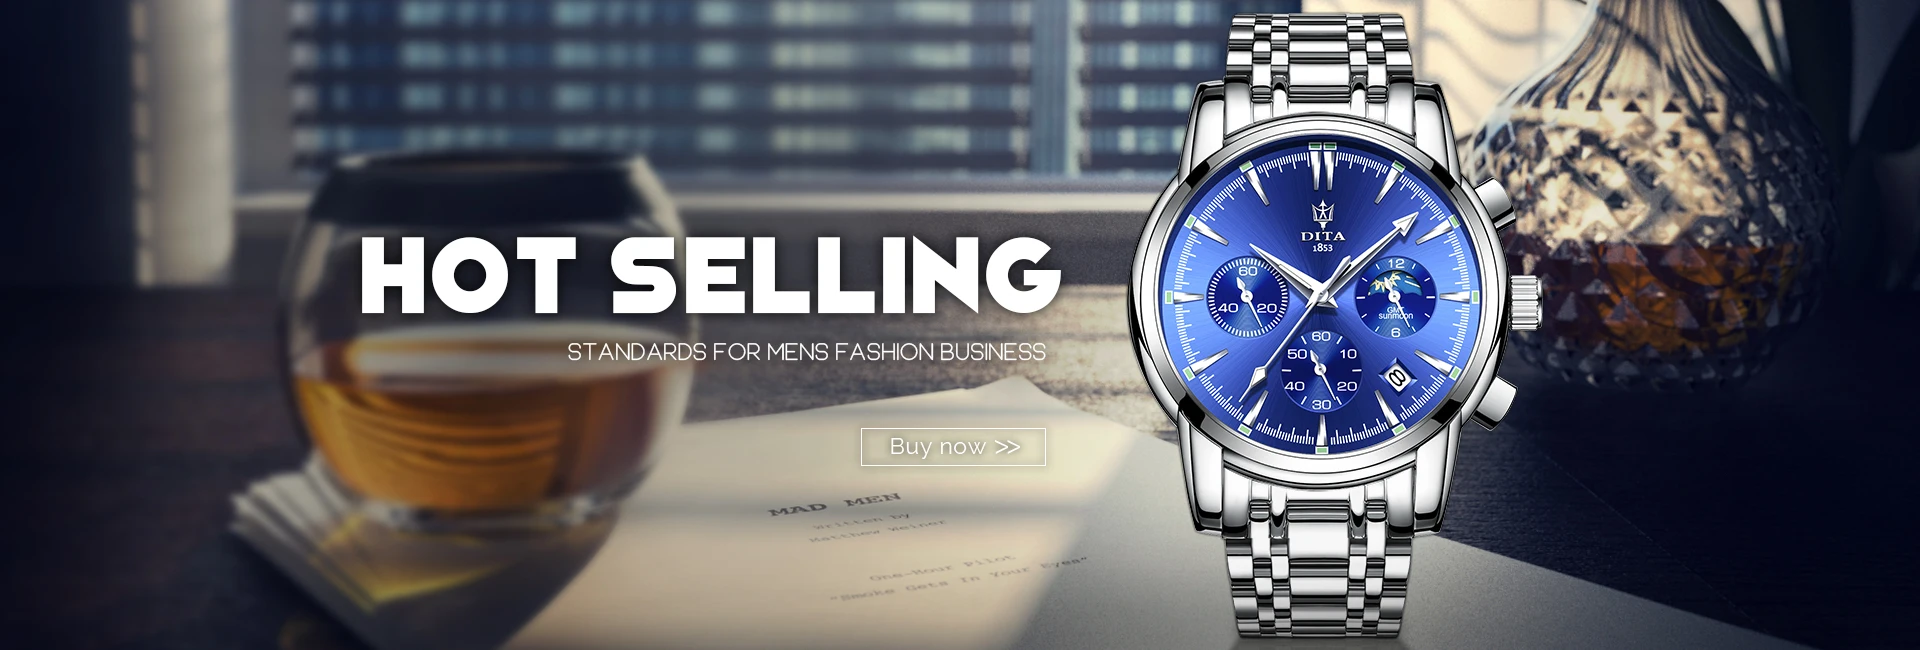 Fairwhale для мужчин бизнес часы Модные Классические кварцевые нержавеющая сталь спортивные часы Роскошные мужские часы Relogio Masculino